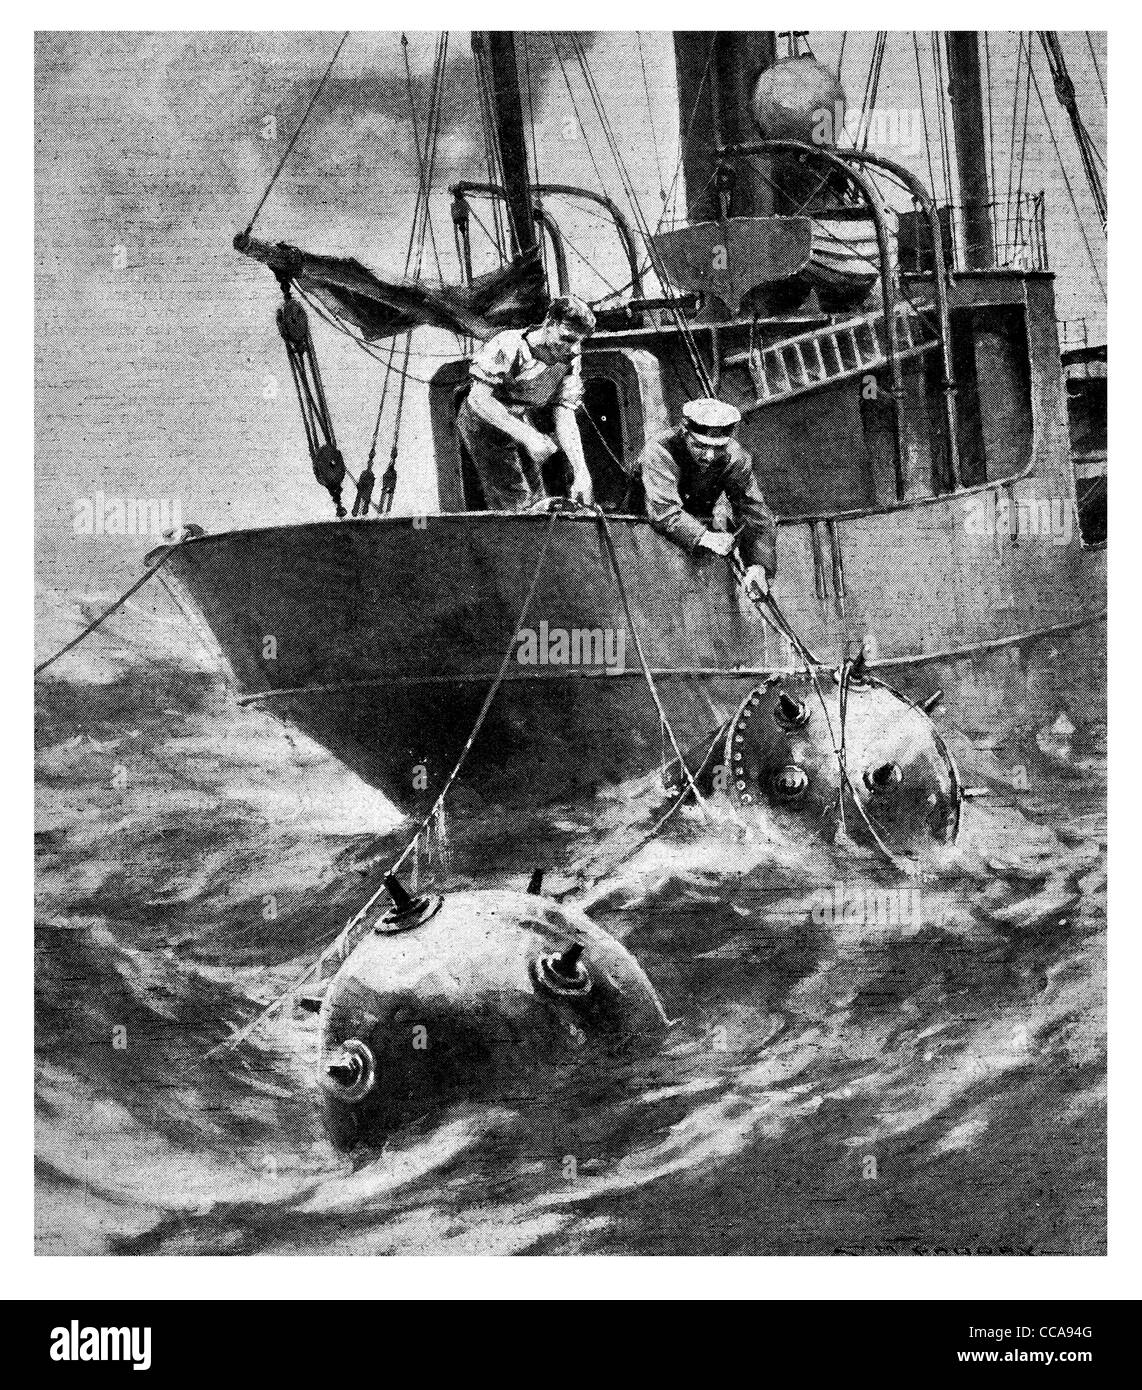 1917 2 marins coupe chalutier de mines explosives explosifs de mine danger explosif des navires de pêche en haute mer ocean peur sanglier Banque D'Images